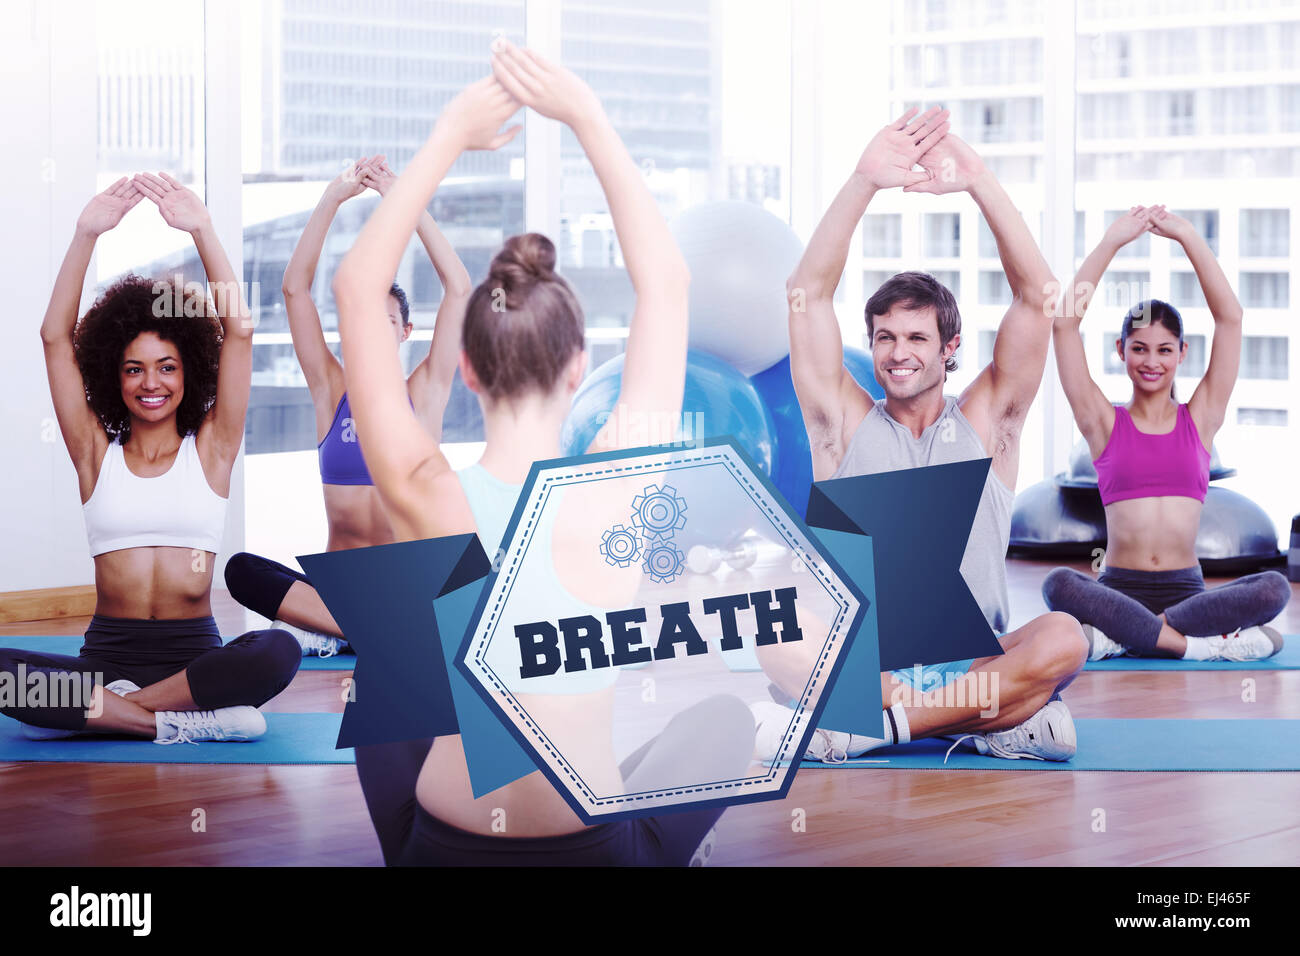 La parola respiro e persone con trainer facendo esercizi di stretching Foto Stock